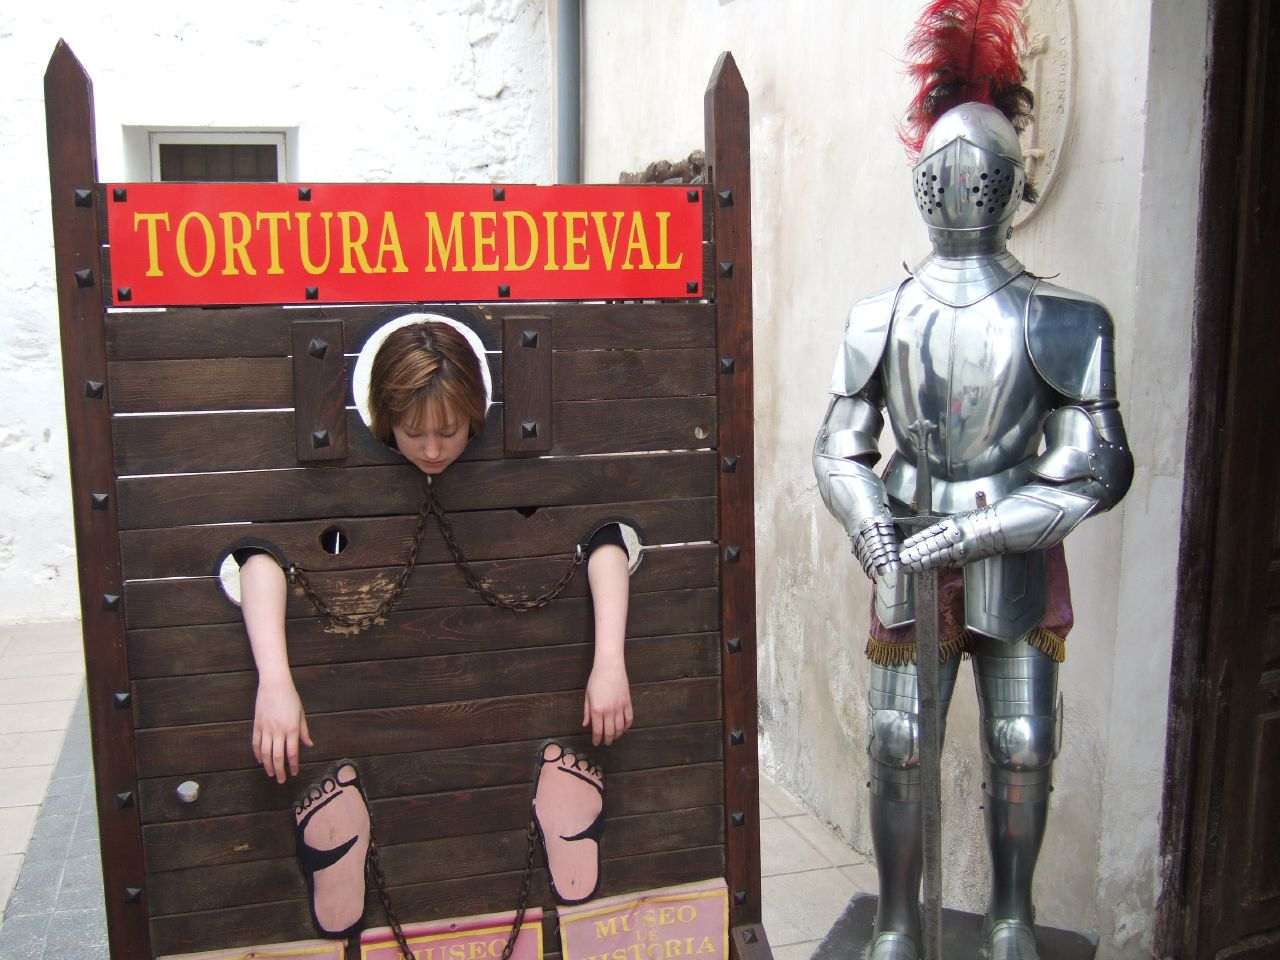 Museum of Torture – Inquisicion, Santillana del Mar, Spain